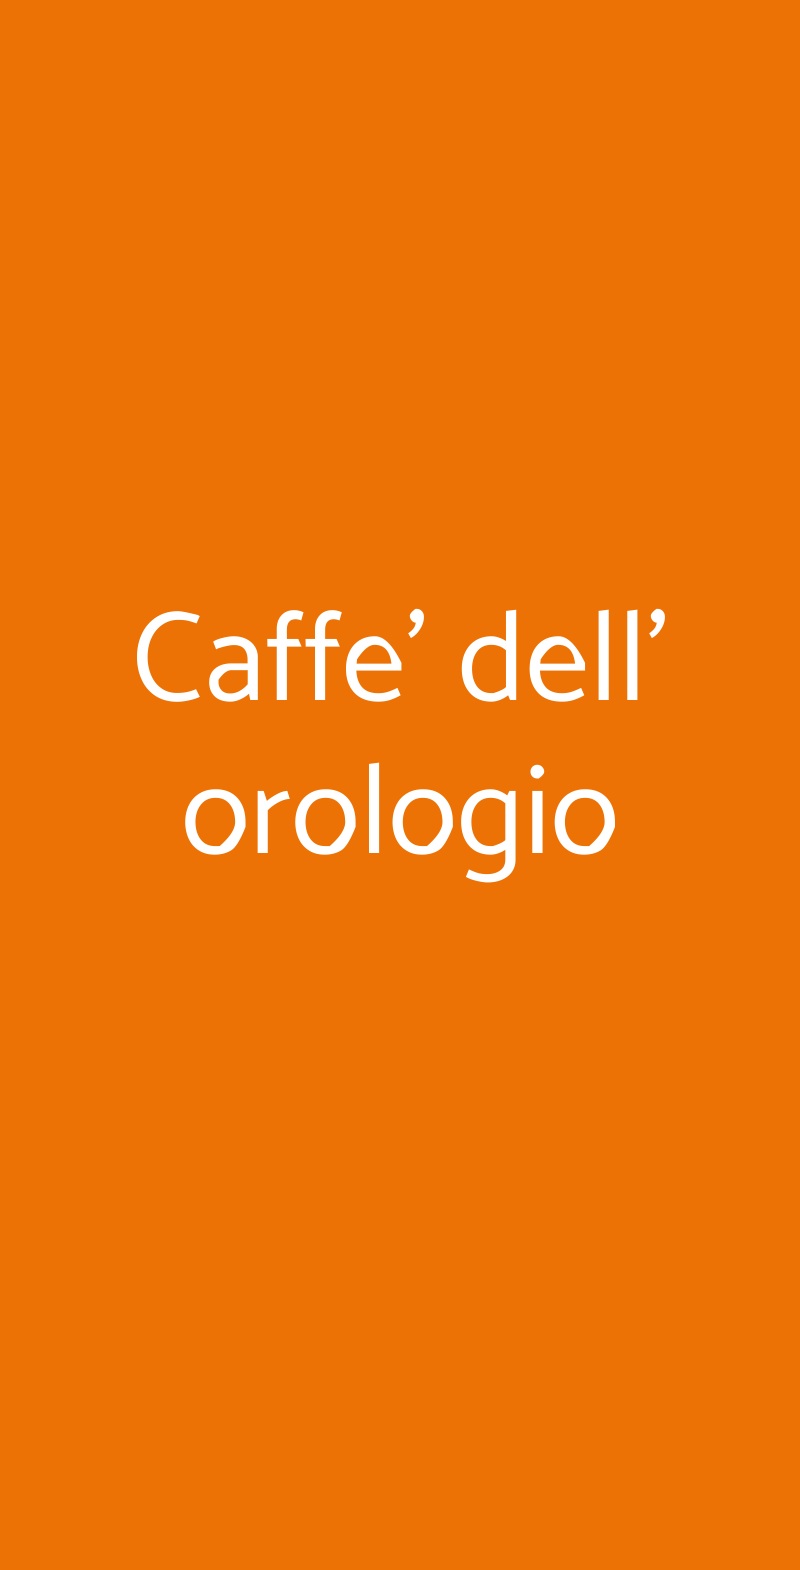 Caffe' dell' orologio Torino menù 1 pagina